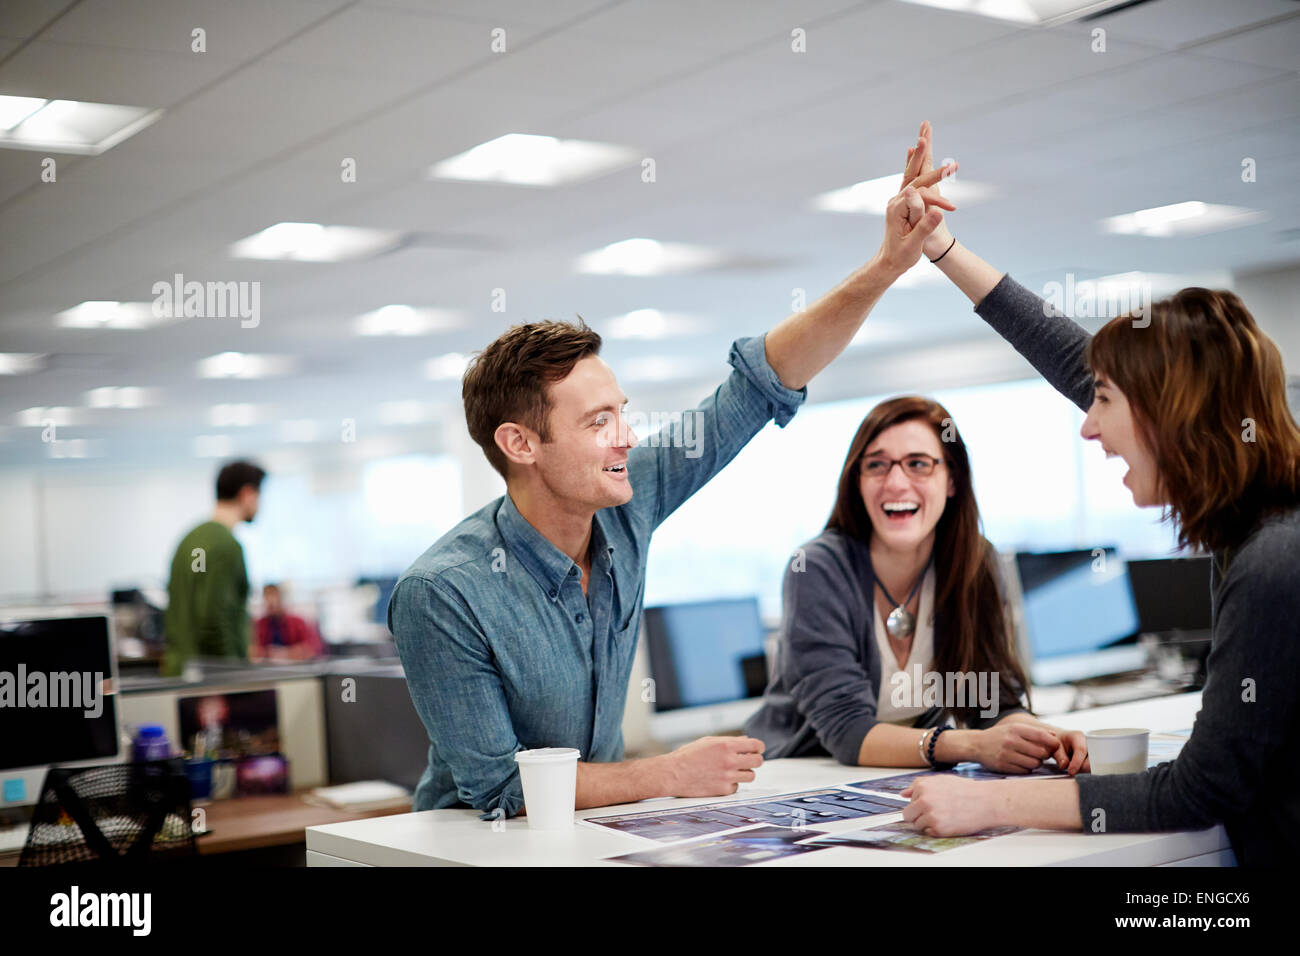 Trois personnes dans un bureau à la recherche de photographies et de faire un geste de cinq. Banque D'Images